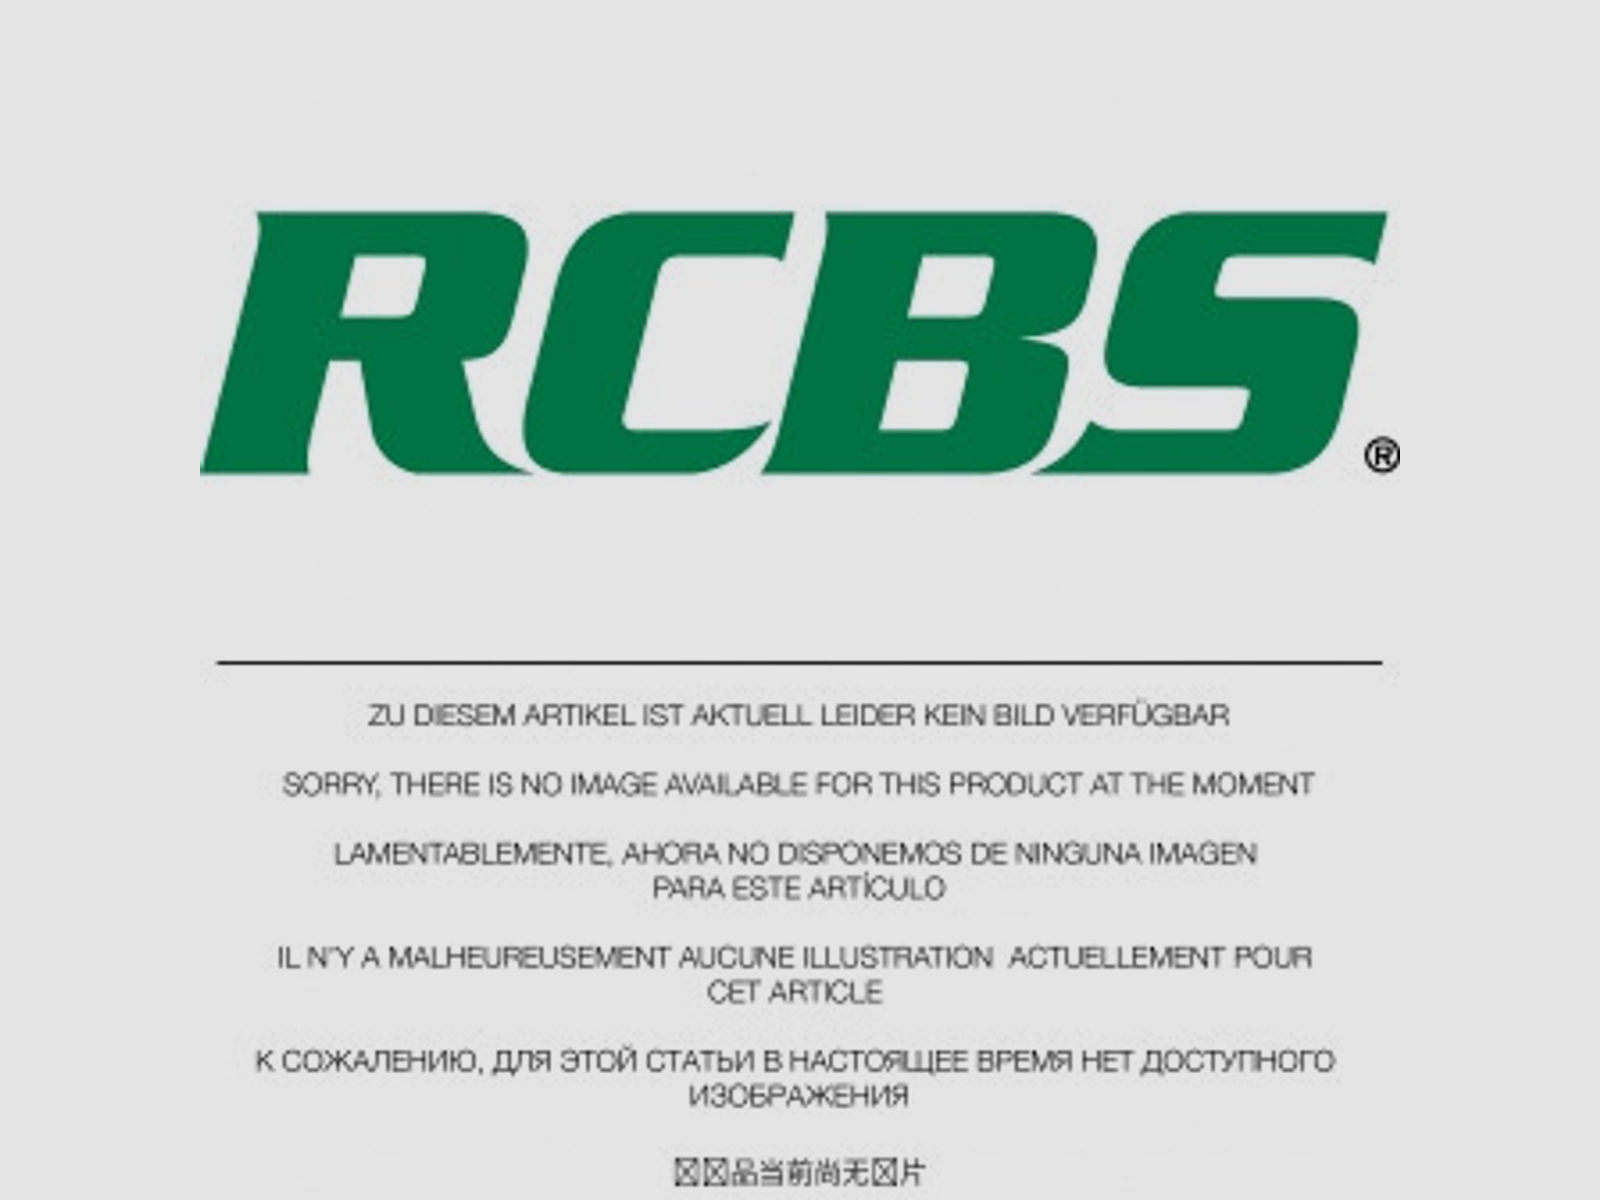 RCBS X-Serie Small Base Vollkalibriermatrize für Kaliber: 30-06 Springfield 39159